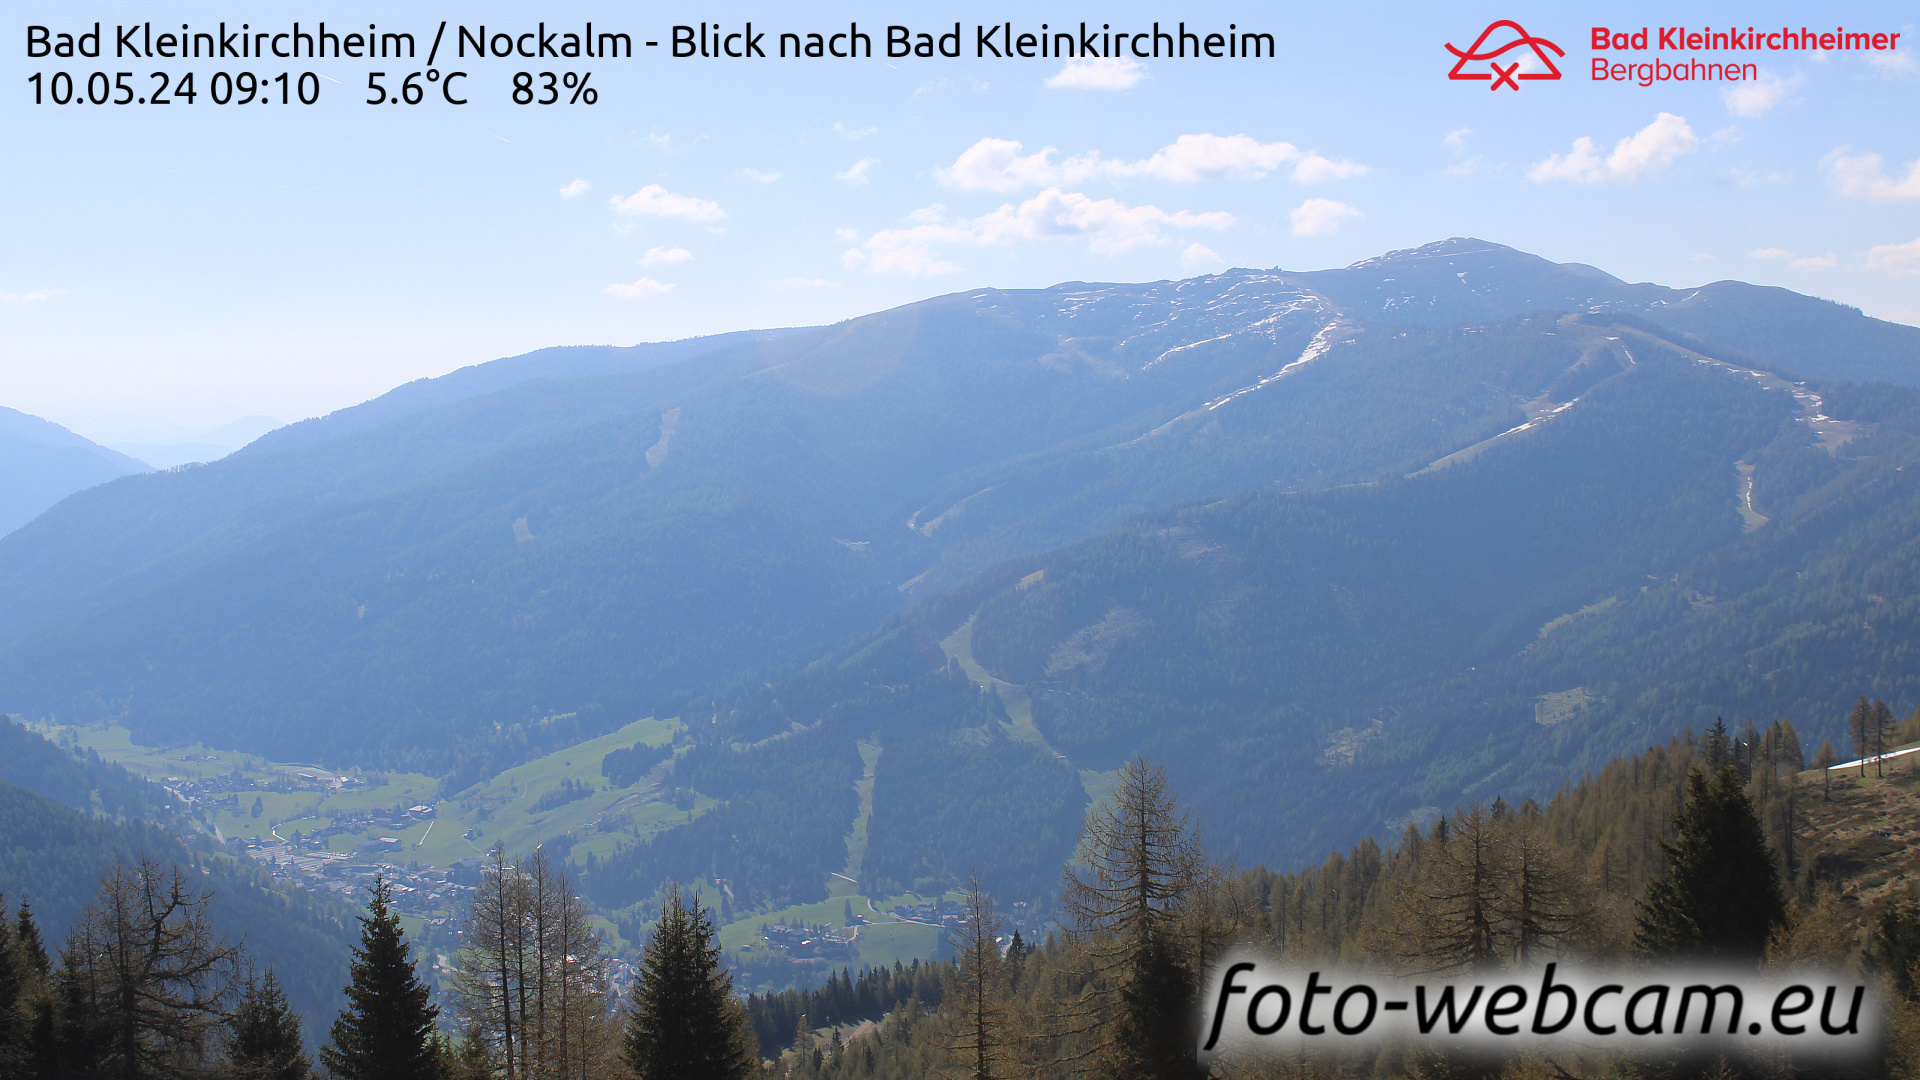 Bad Kleinkirchheim Do. 09:17